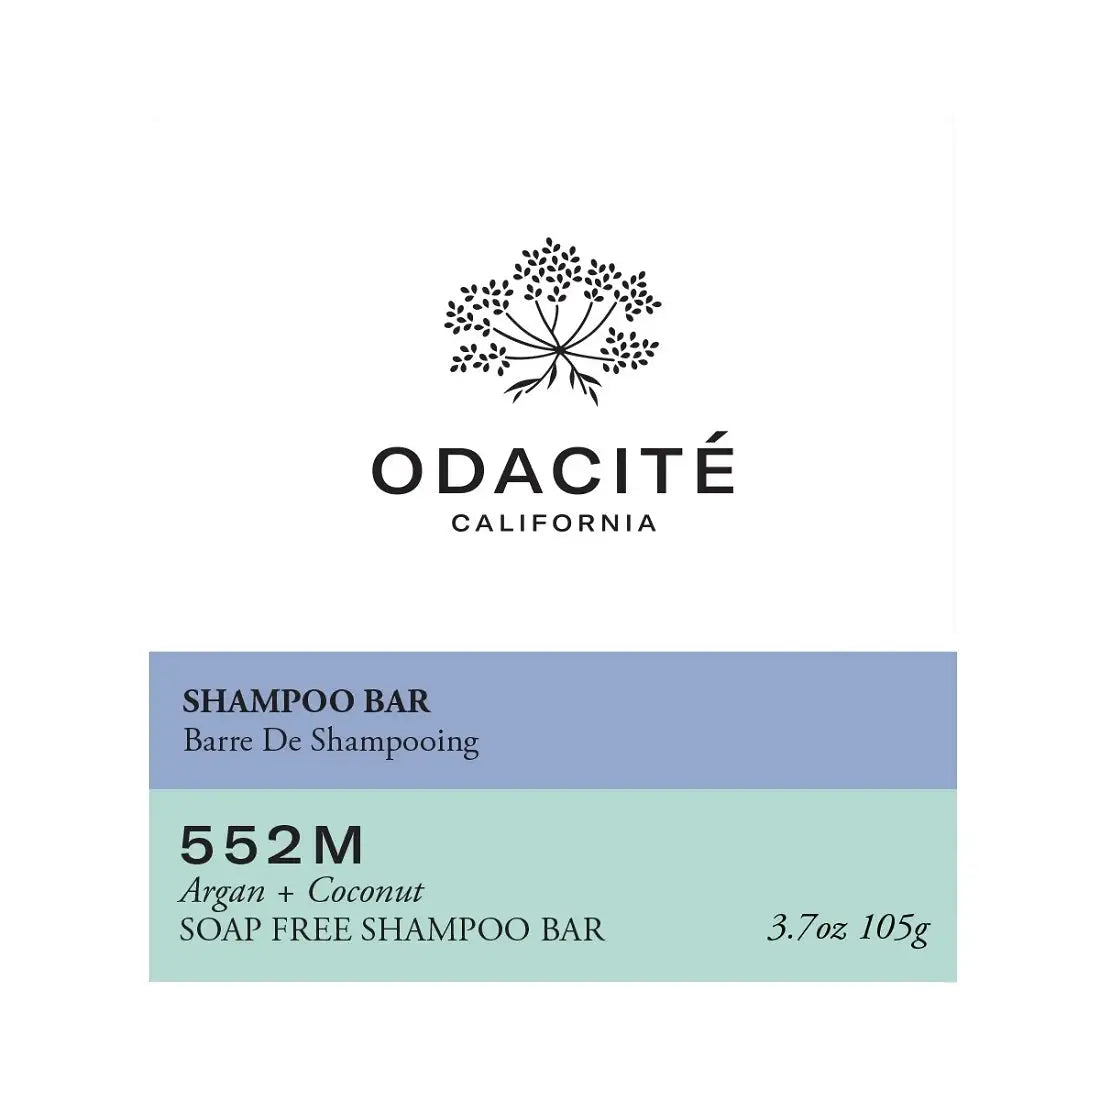 Odacite 552M Argan + Coconut Soap Free Shampoo Bar 105g